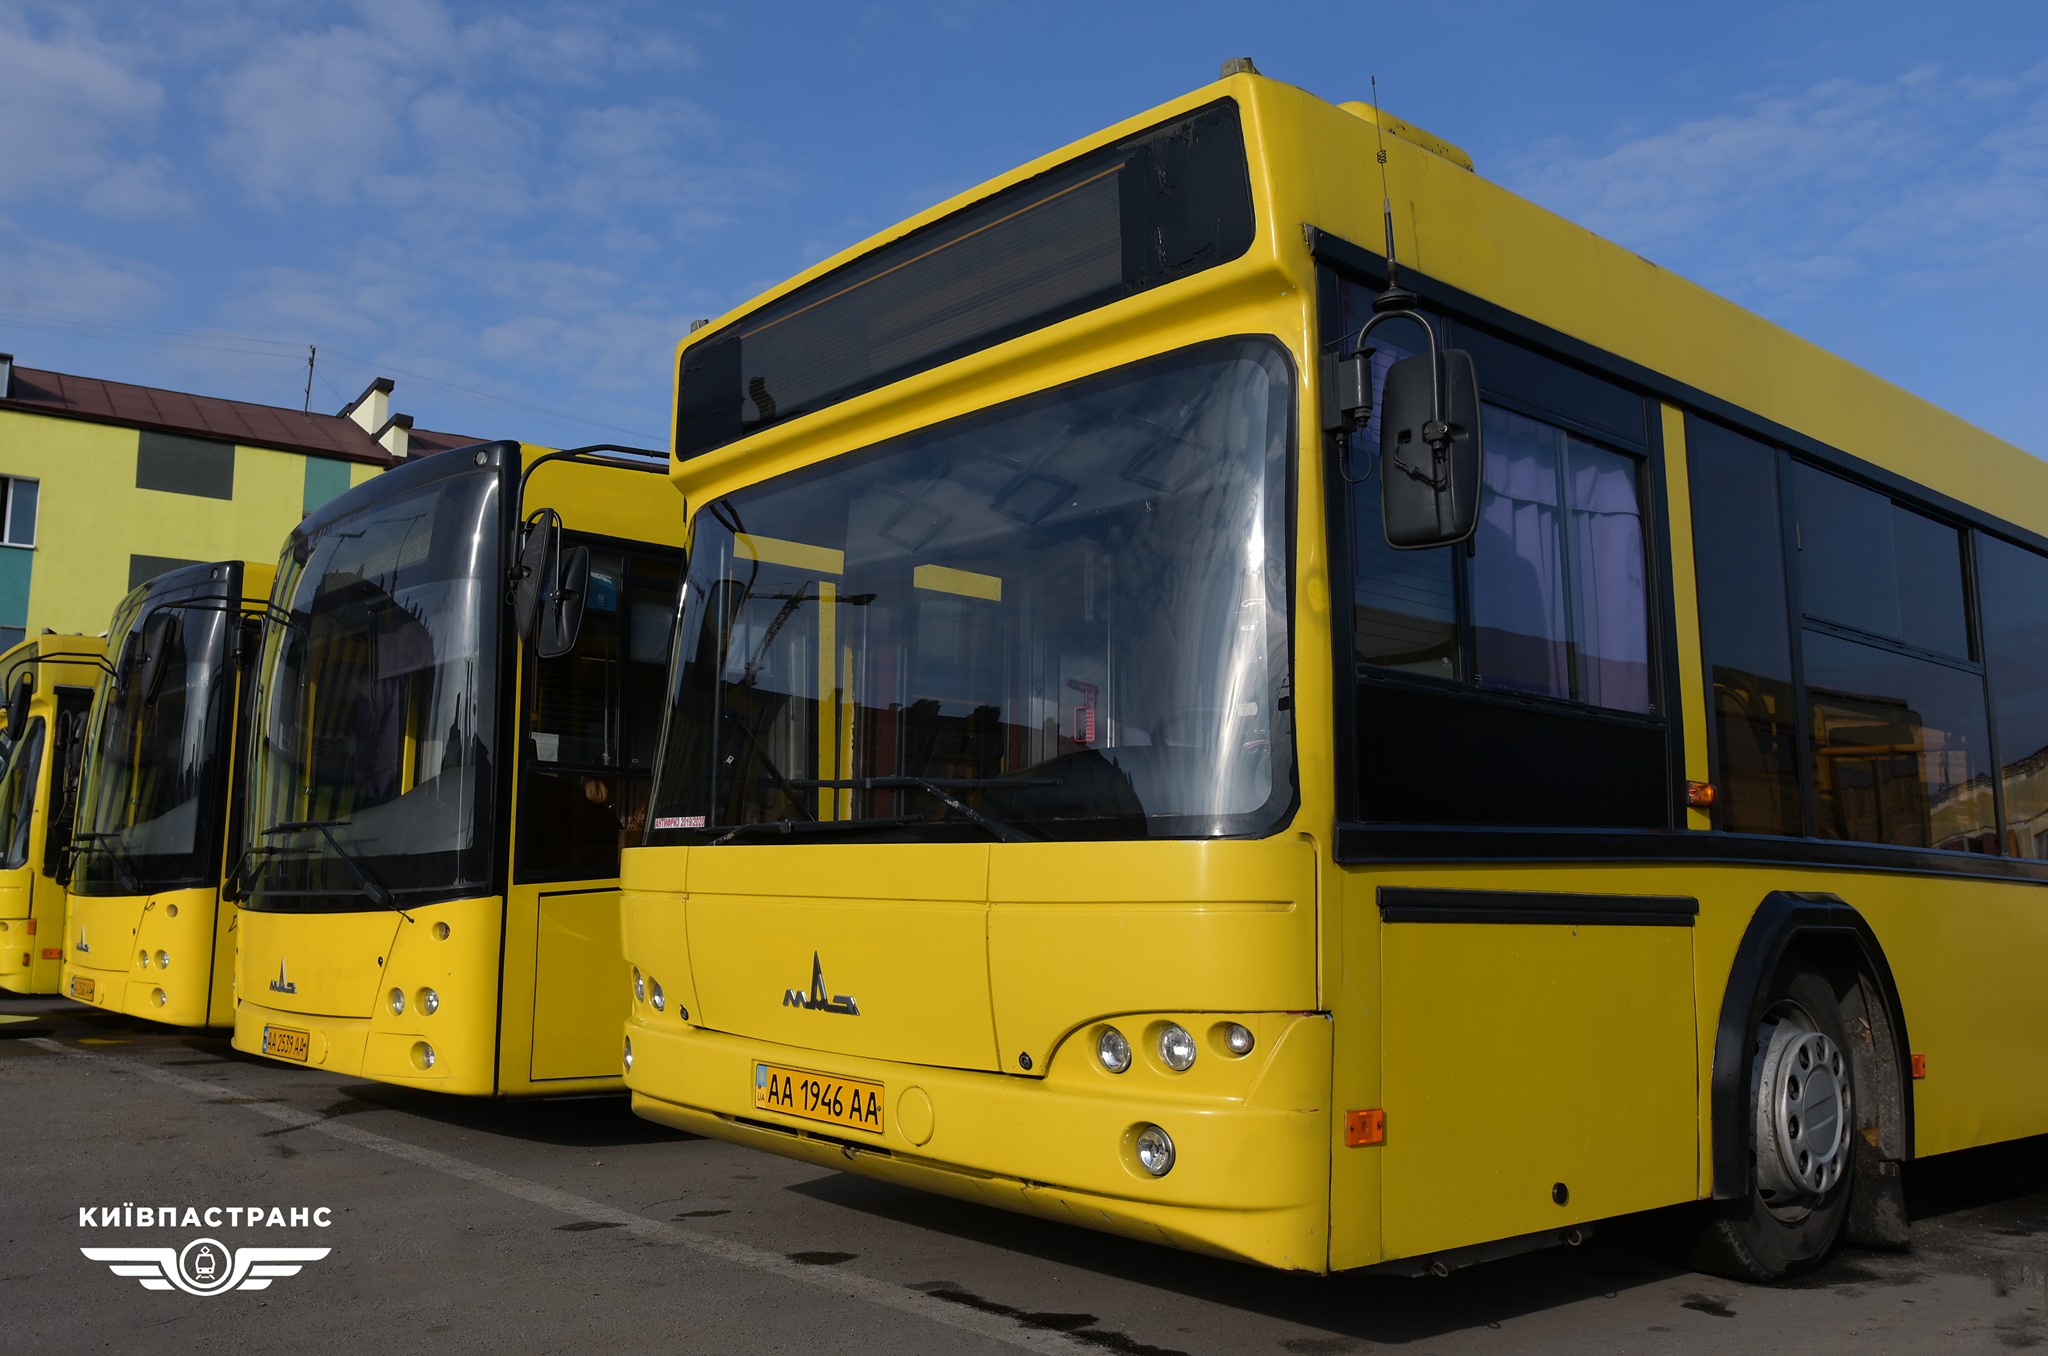 Завтра, 28 декабря, столичные власти обещают пустить три автобусных маршрута через Шулявский путепровод